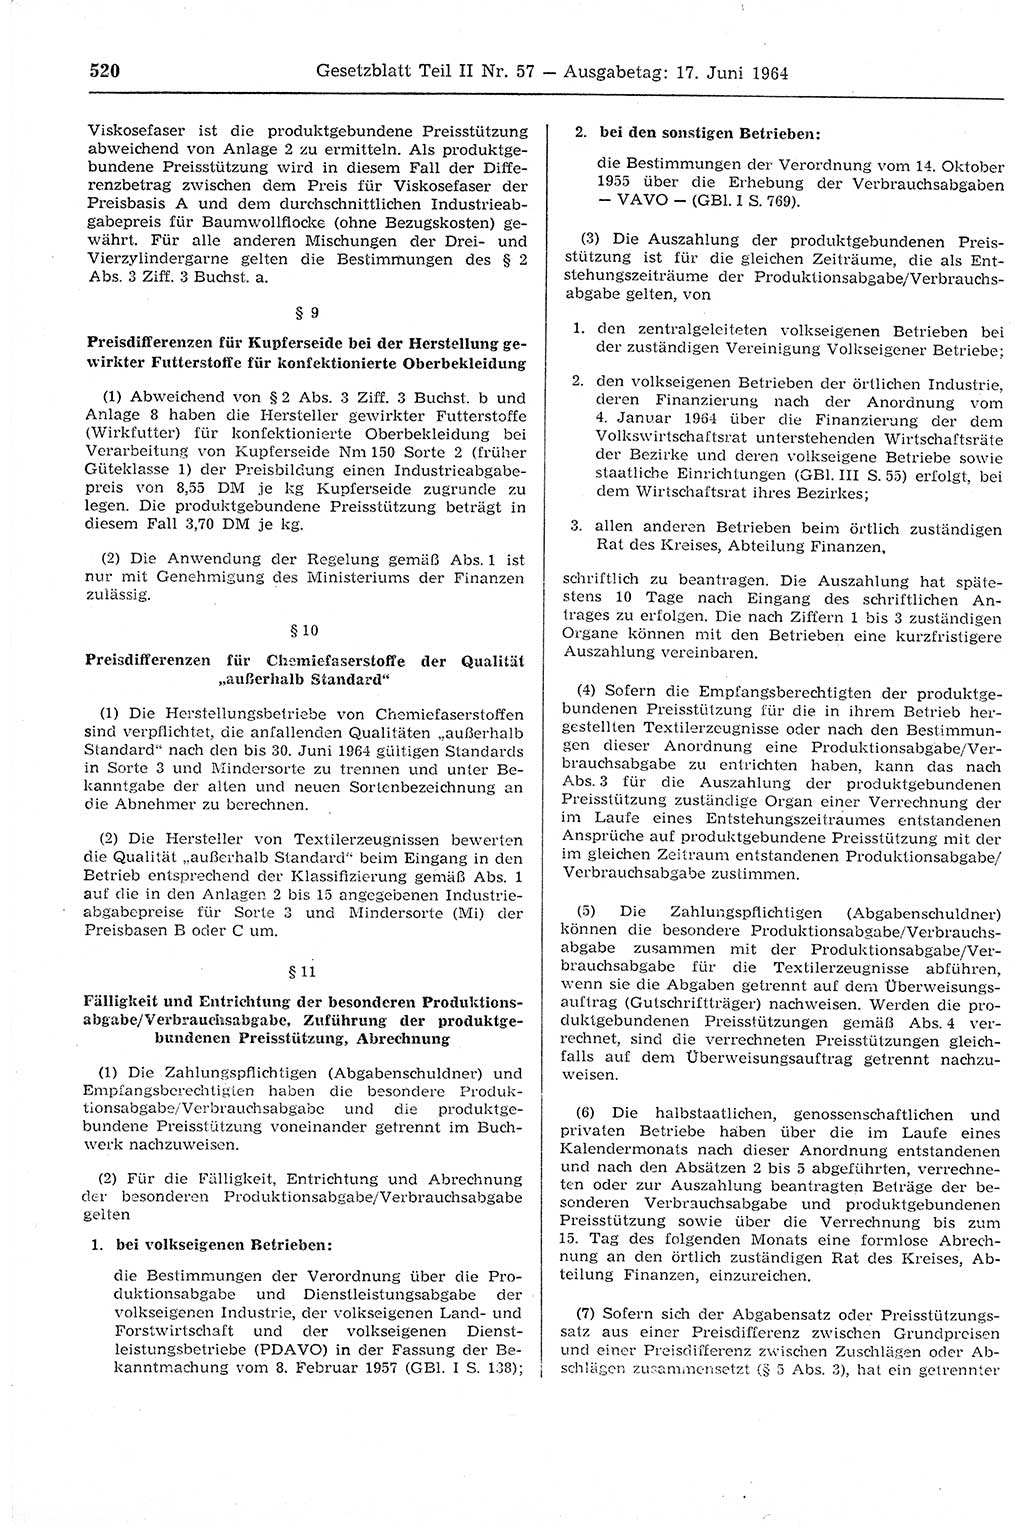 Gesetzblatt (GBl.) der Deutschen Demokratischen Republik (DDR) Teil ⅠⅠ 1964, Seite 520 (GBl. DDR ⅠⅠ 1964, S. 520)